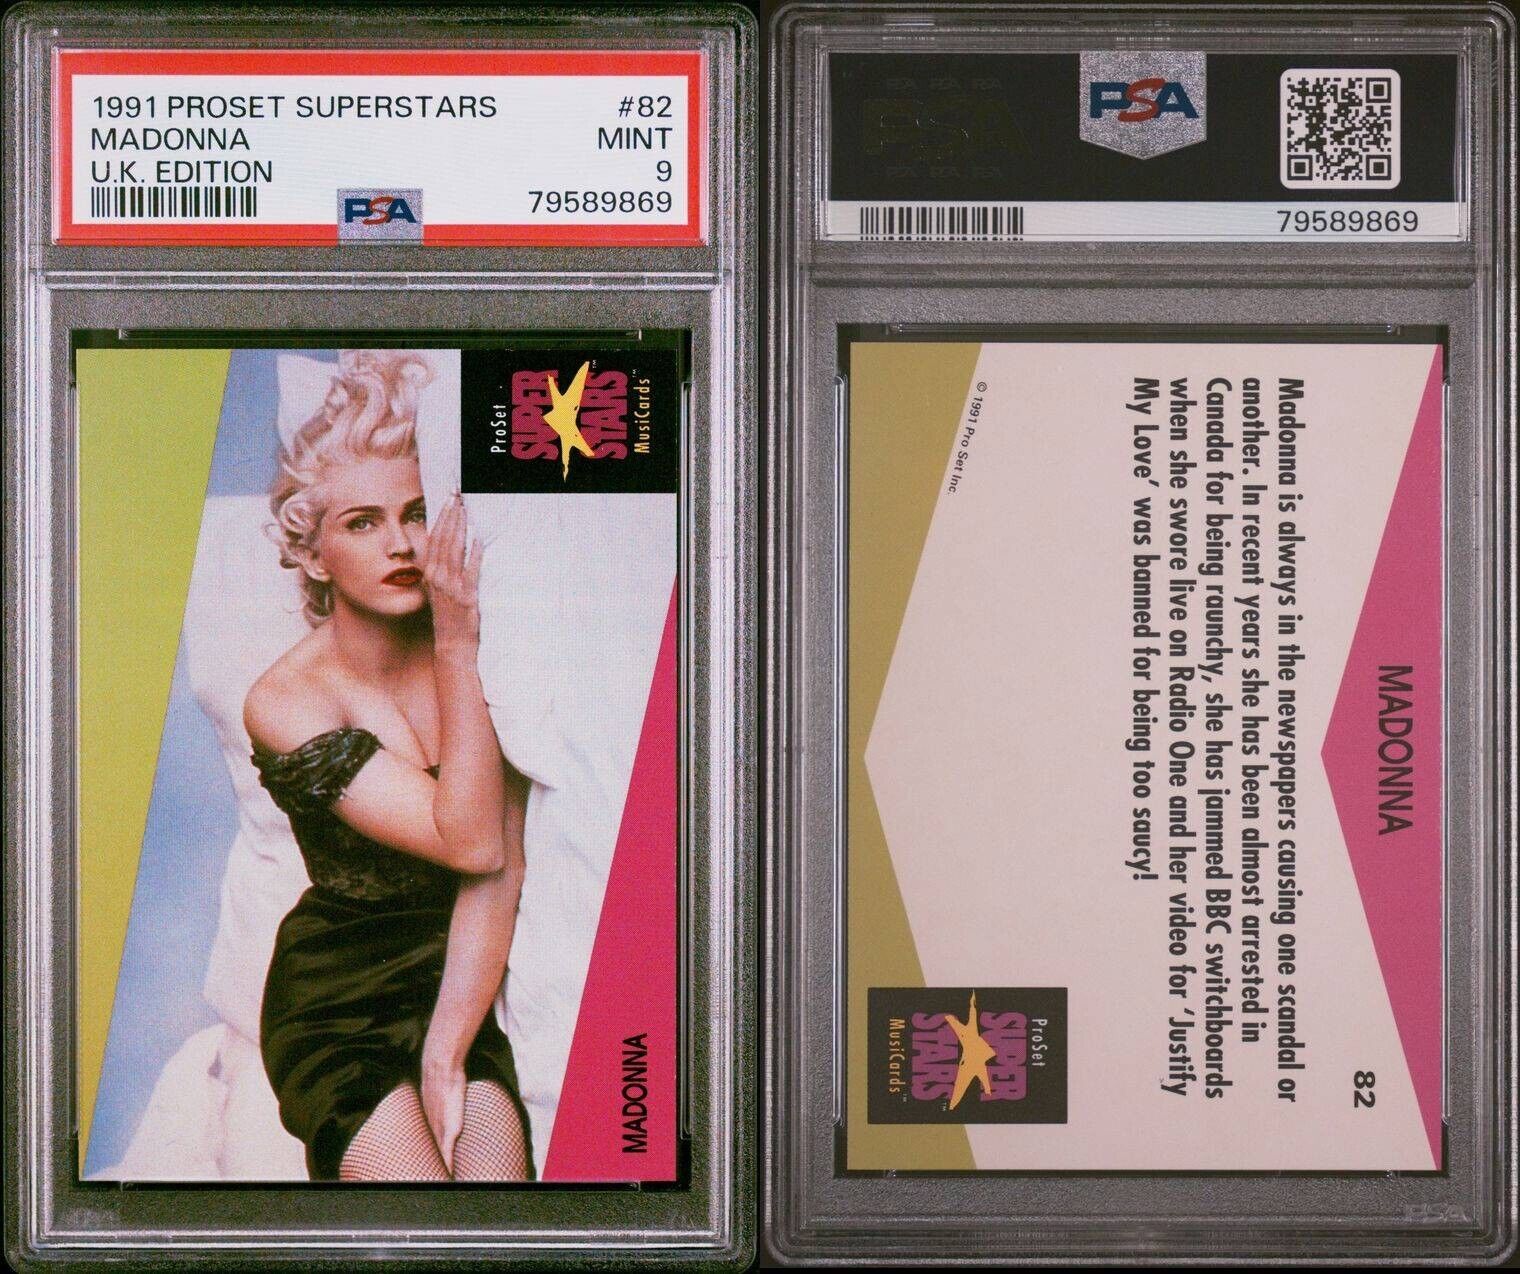 Madonna 1991 Pro Set Superstars MusicCards UK edition #82 PSA 9